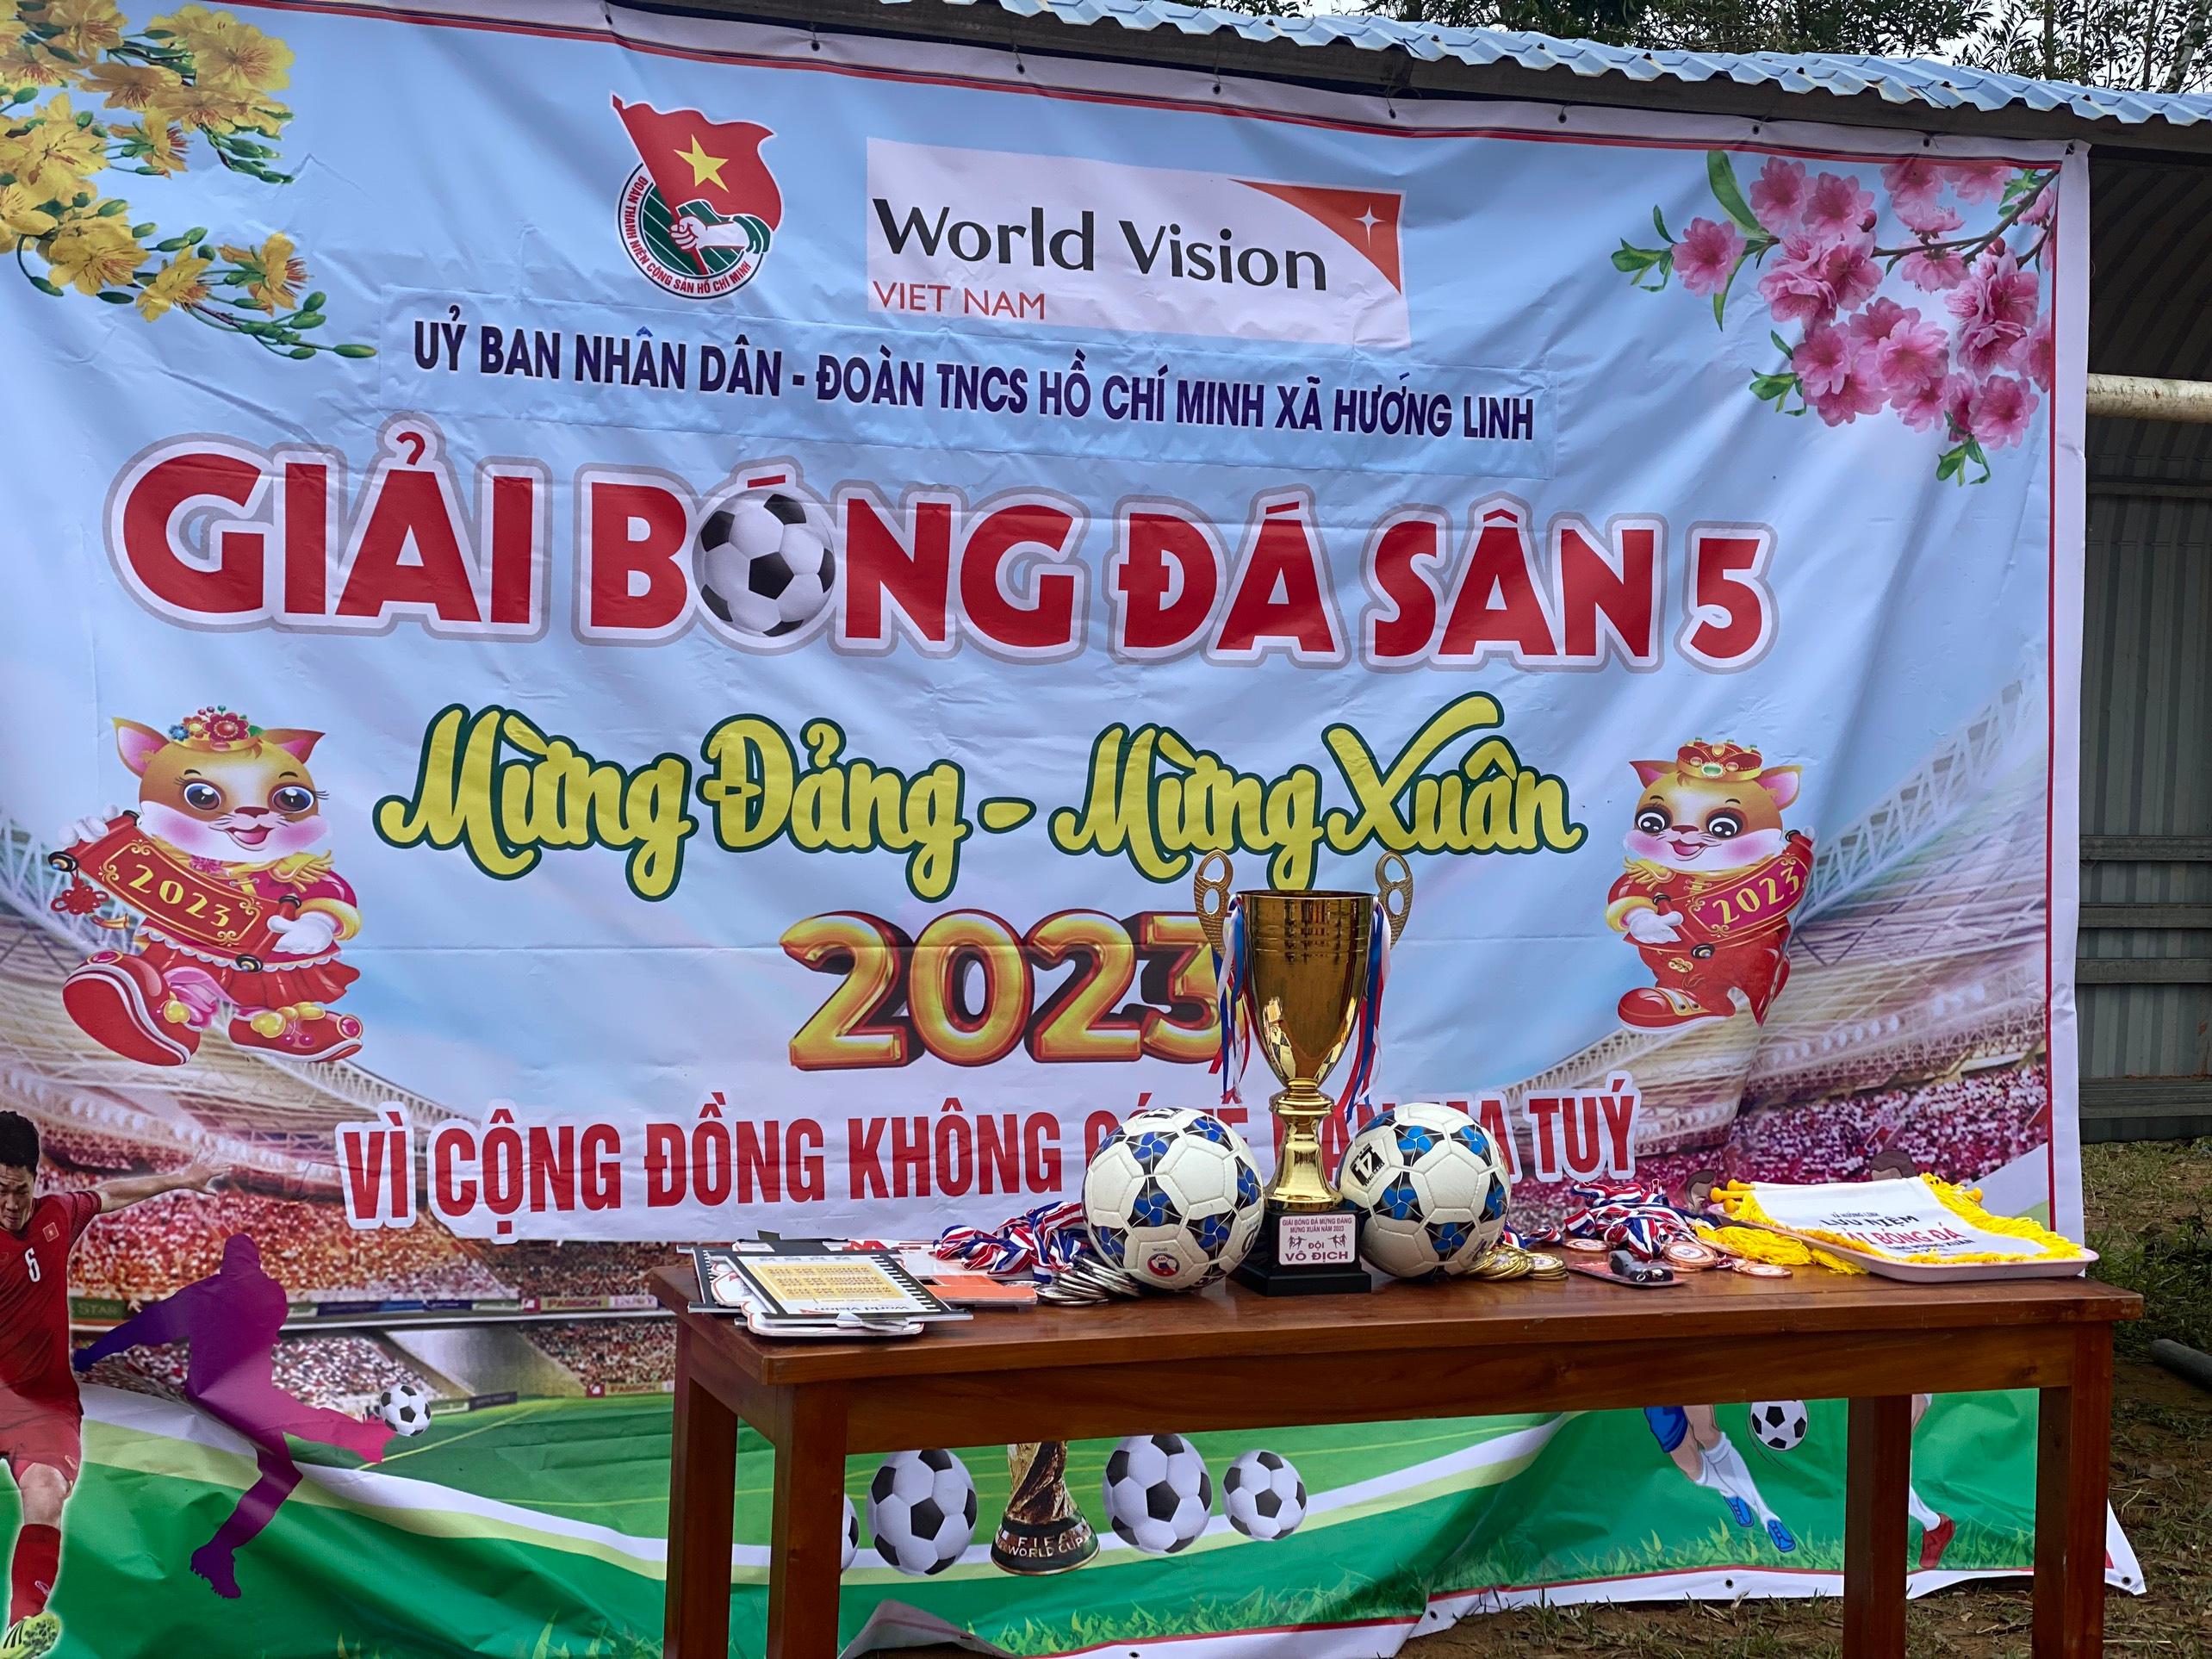 Xã Hướng Linh tổ chức giải bóng đá mừng Đảng - mừng Xuân Qúy Mão 2023